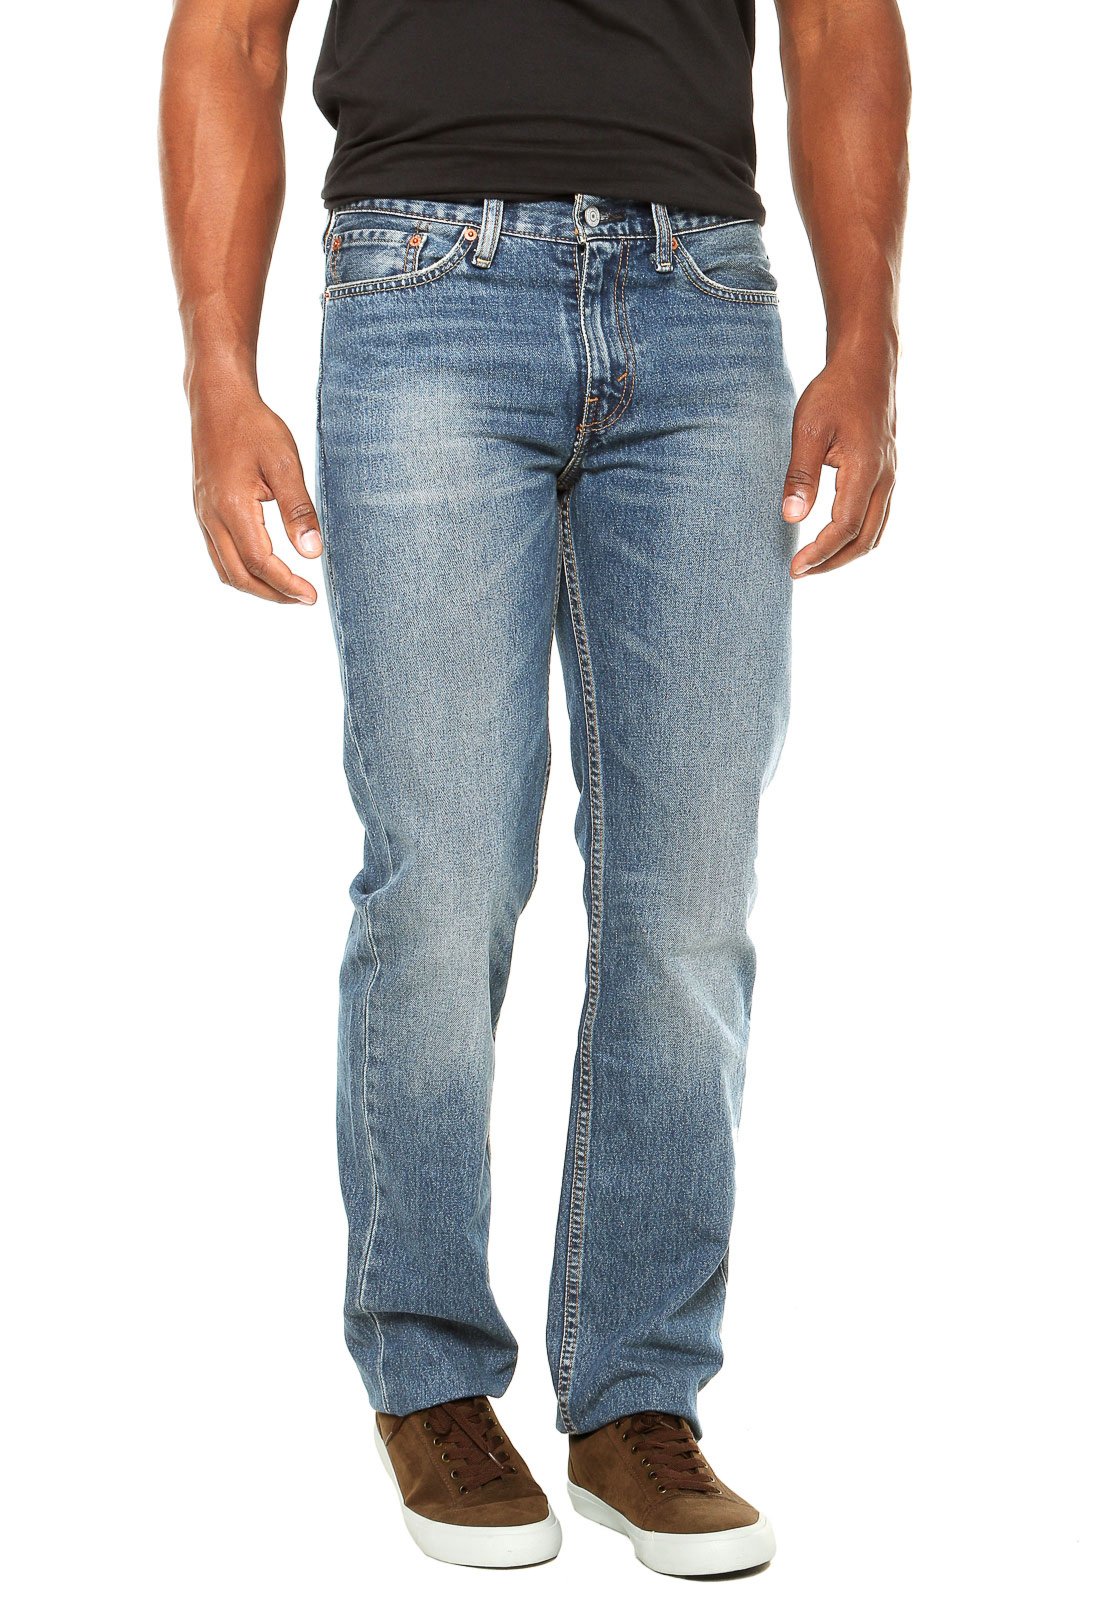 calça jeans masculina com botões na frente